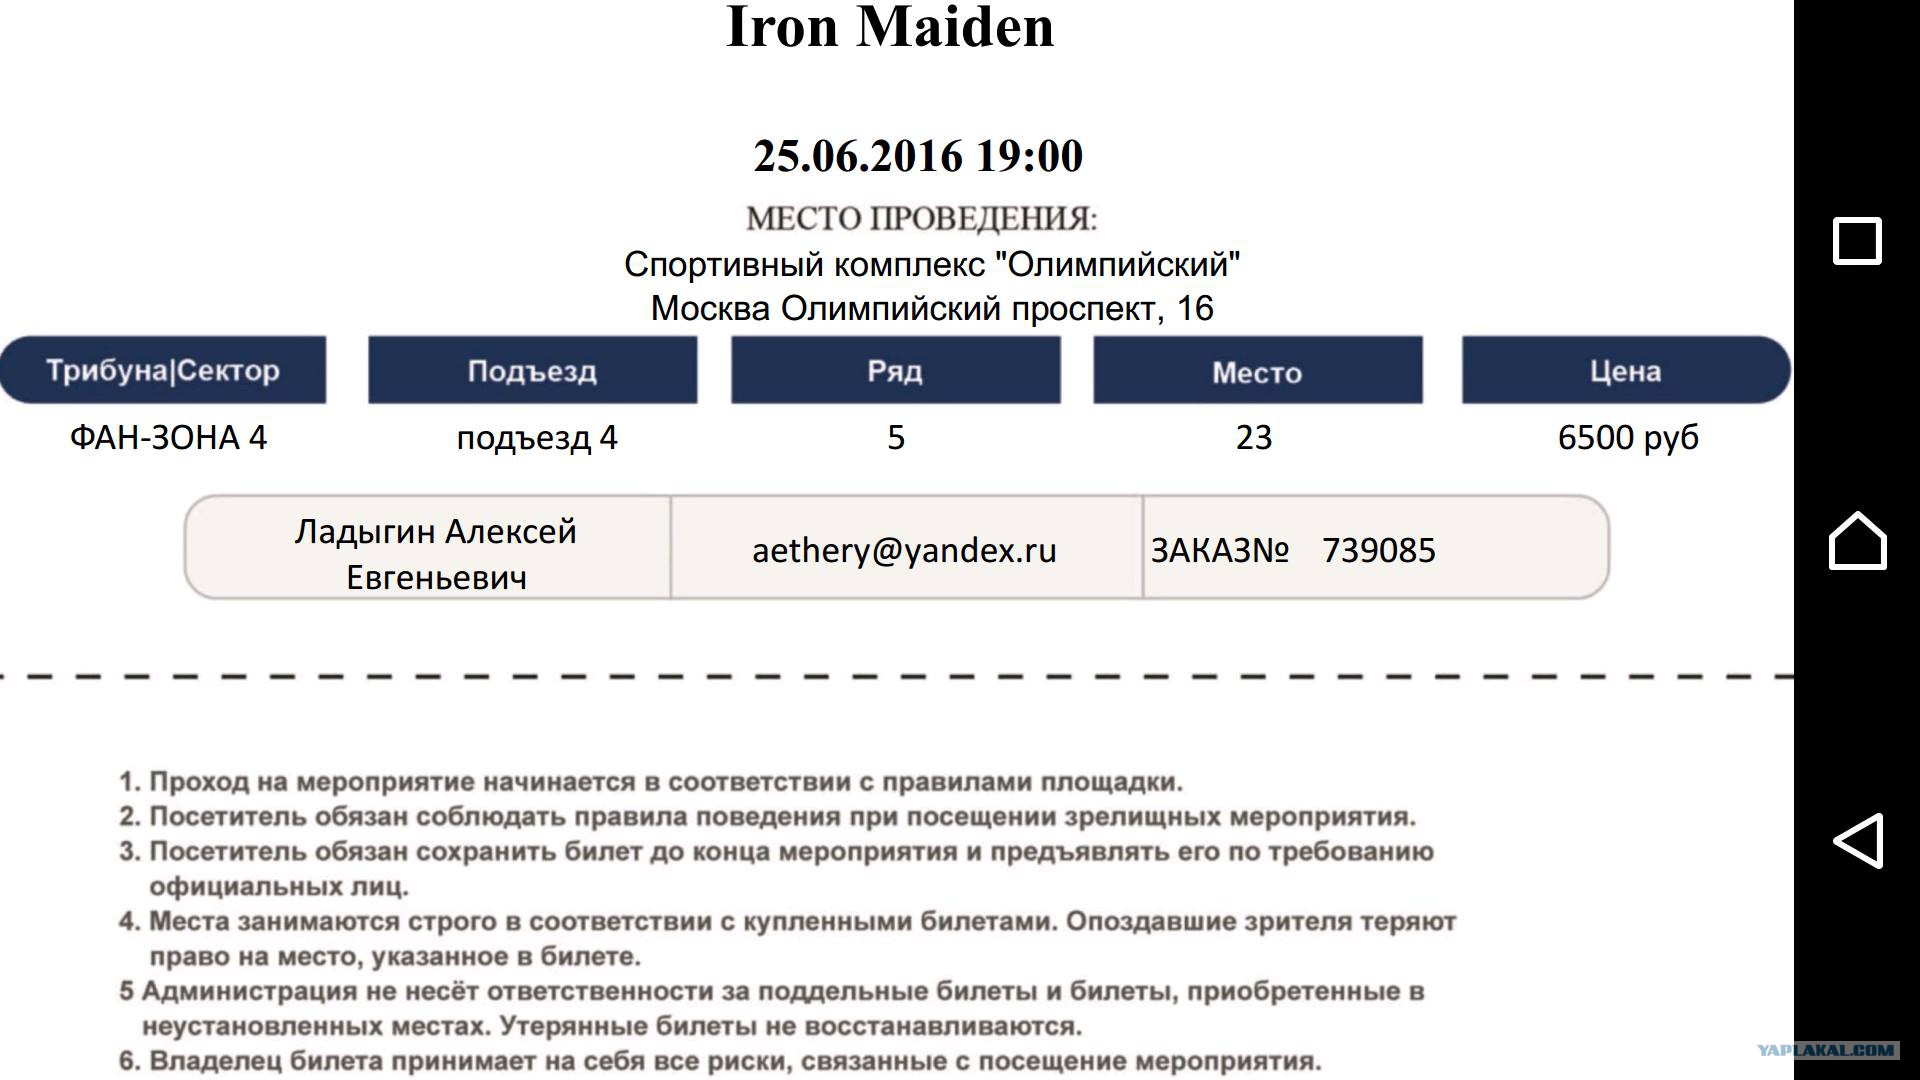 Iron Maiden. , , 25.06.2016